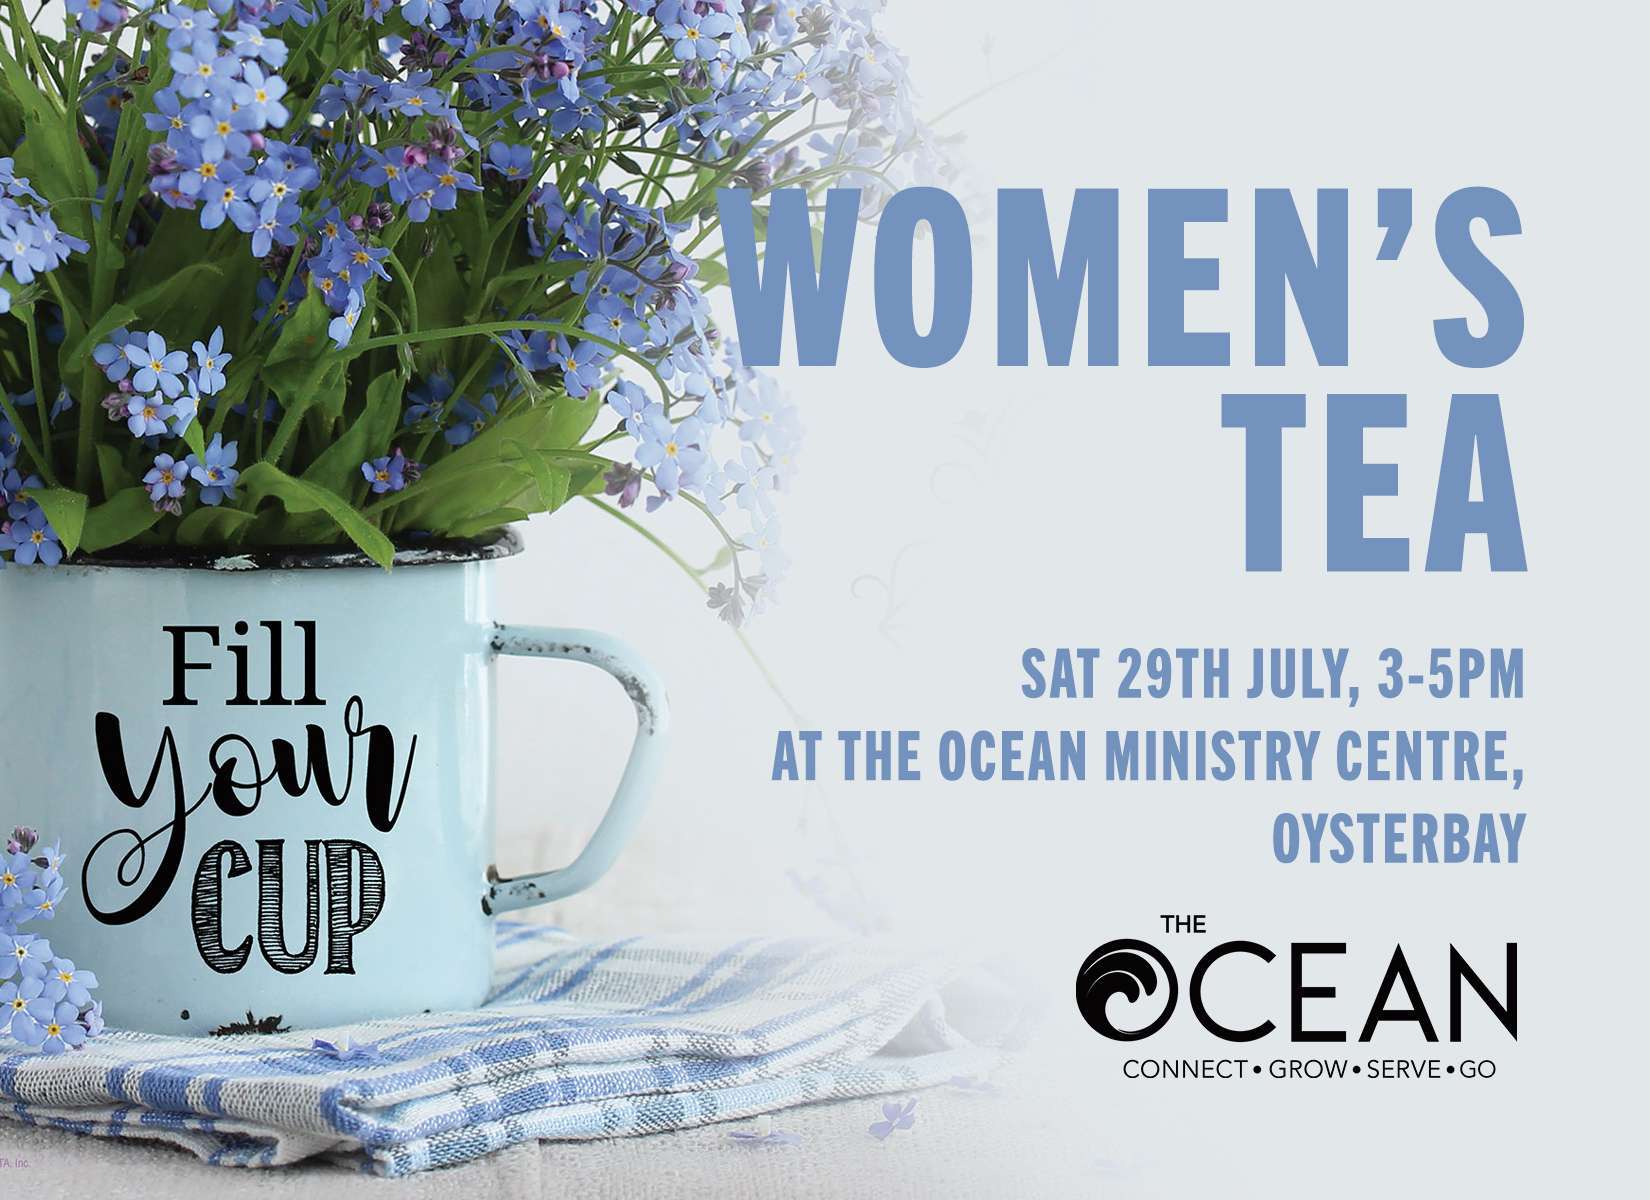 The Ocean International Community Church - Connect. Grow. Serve. Go